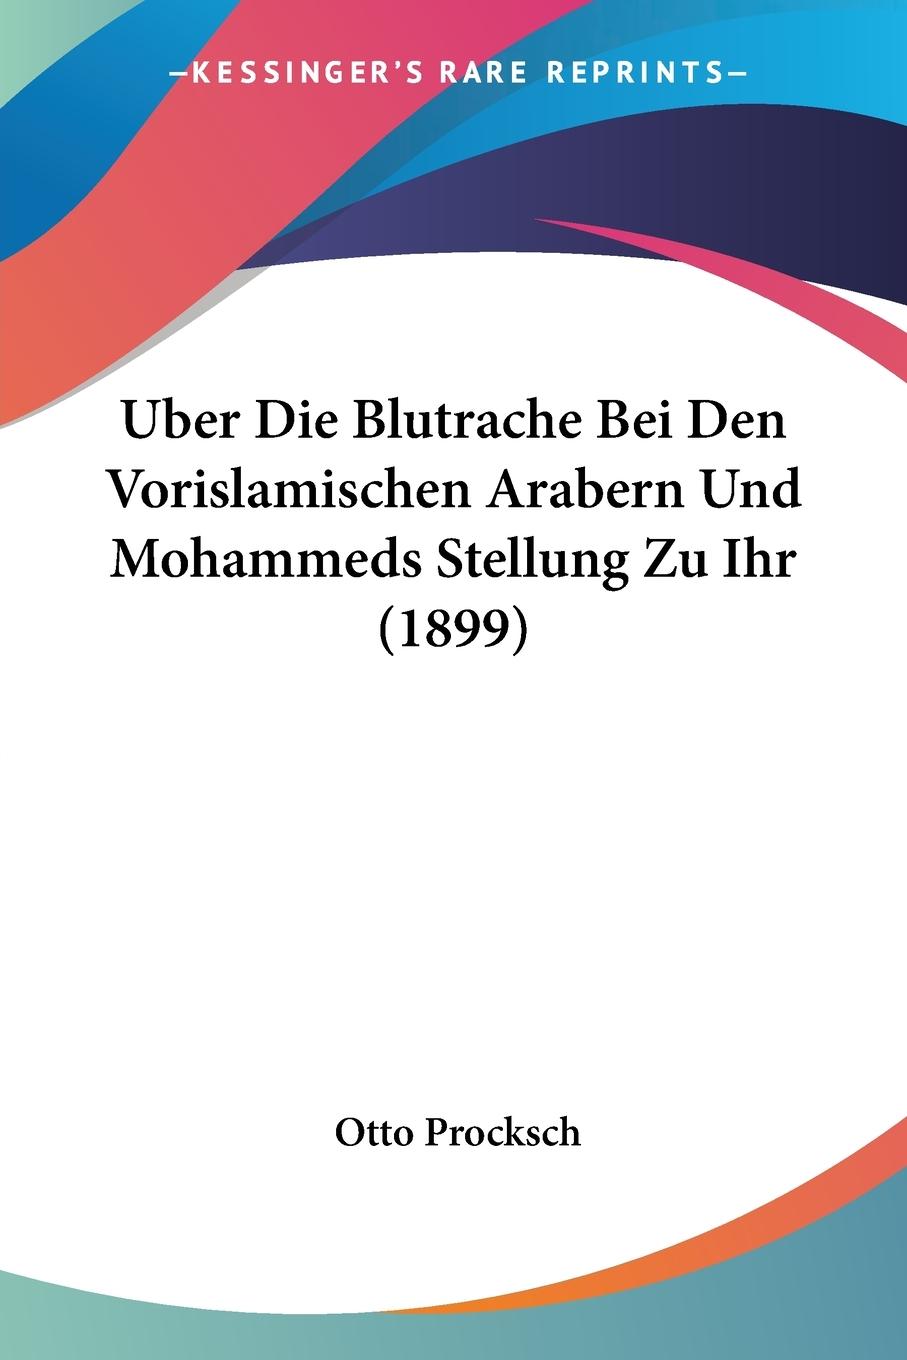 Uber Die Blutrache Bei Den Vorislamischen Arabern Und Mohammeds Stellung Zu Ihr (1899) - Procksch, Otto